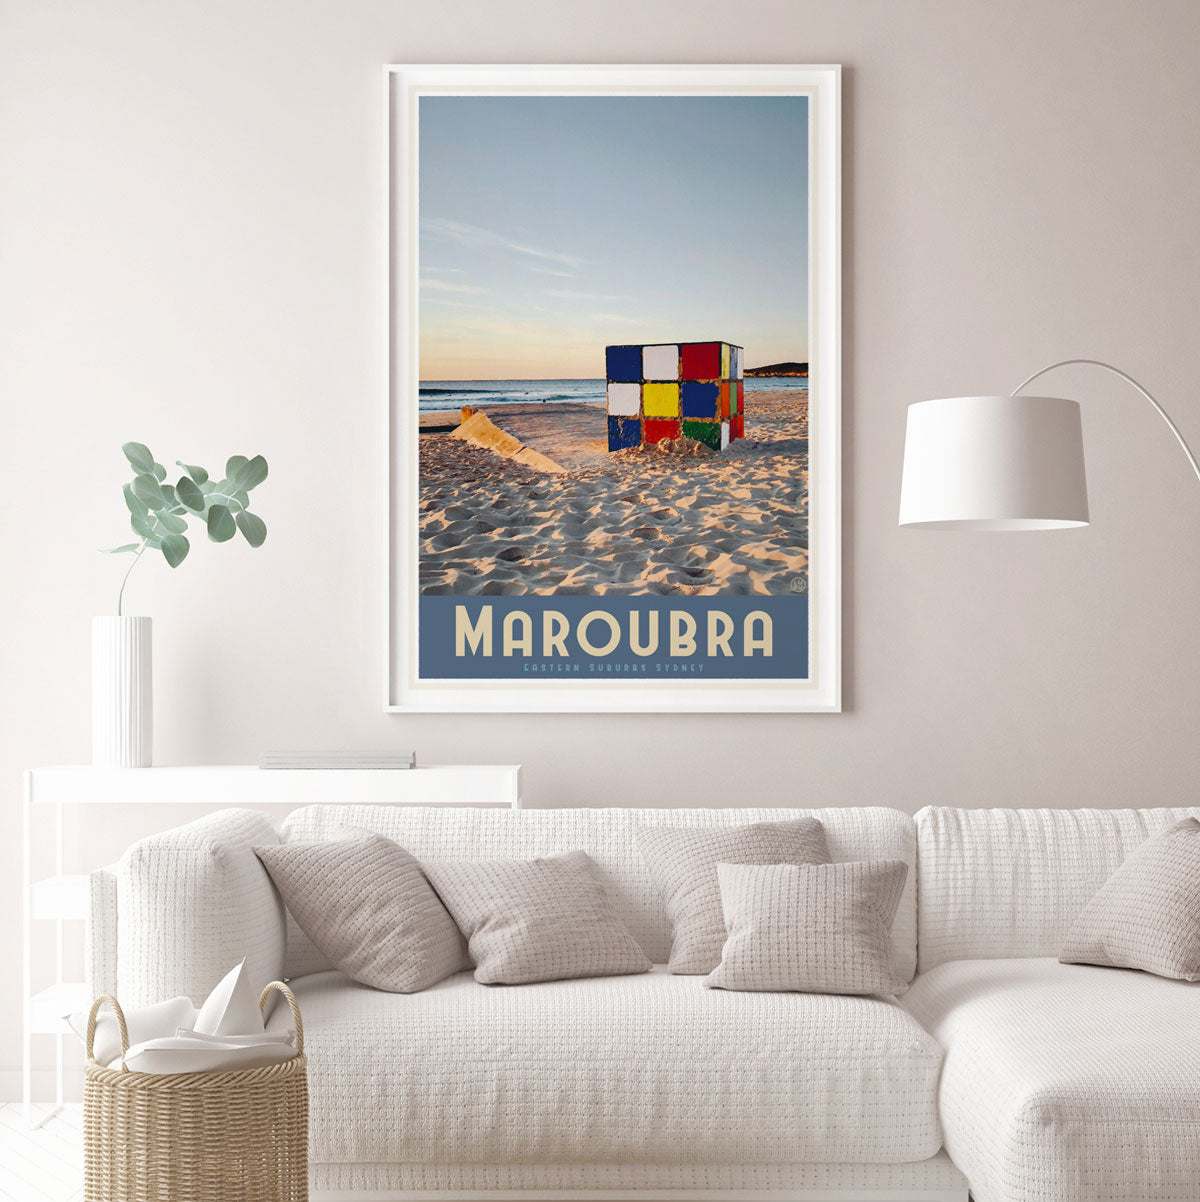 Maroubra vintage style travel print by places we luv